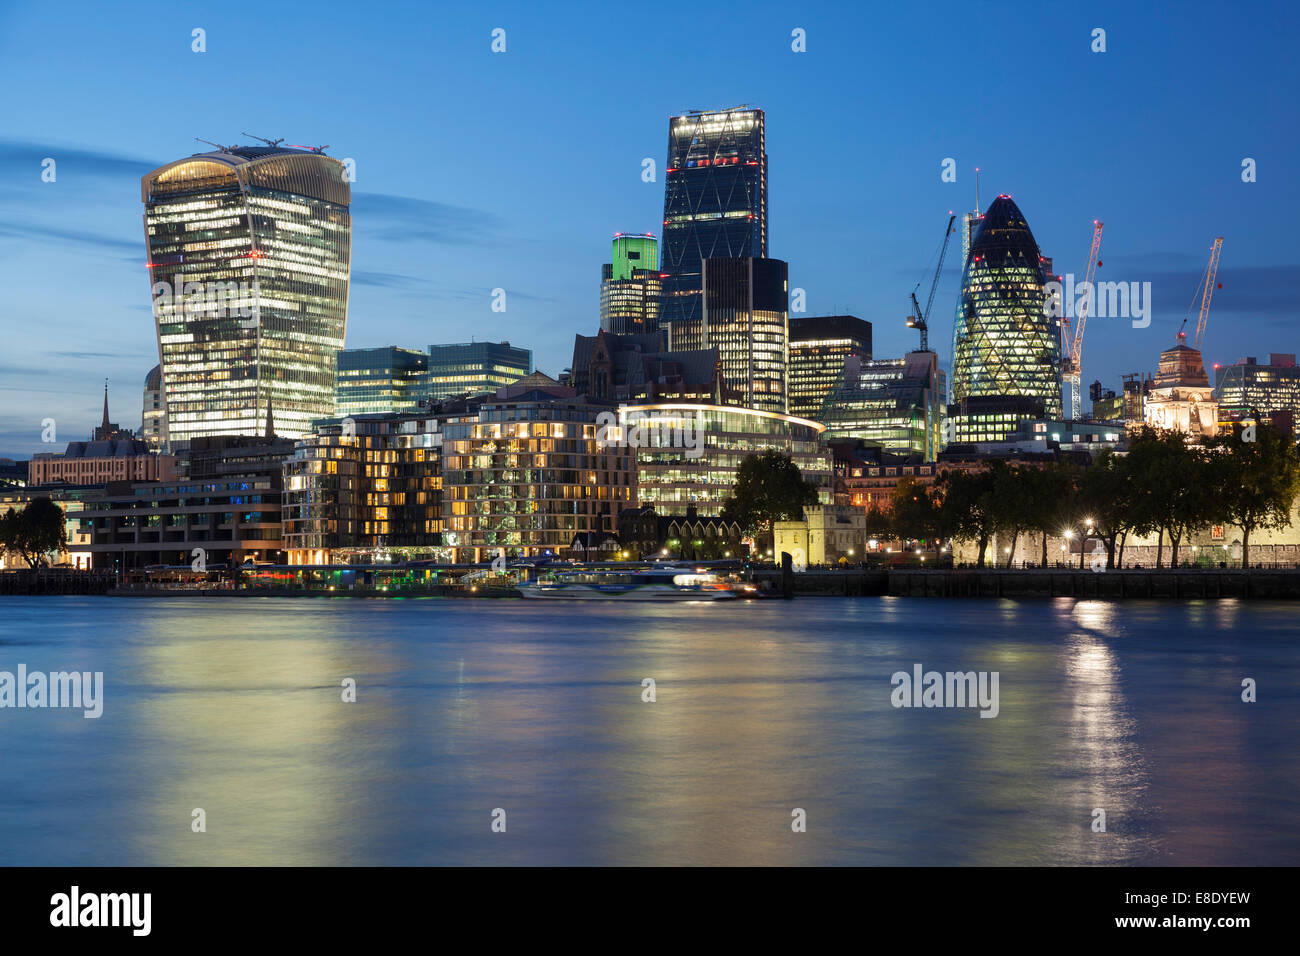 The city of London at dusk. London, England, UK Stock Photo